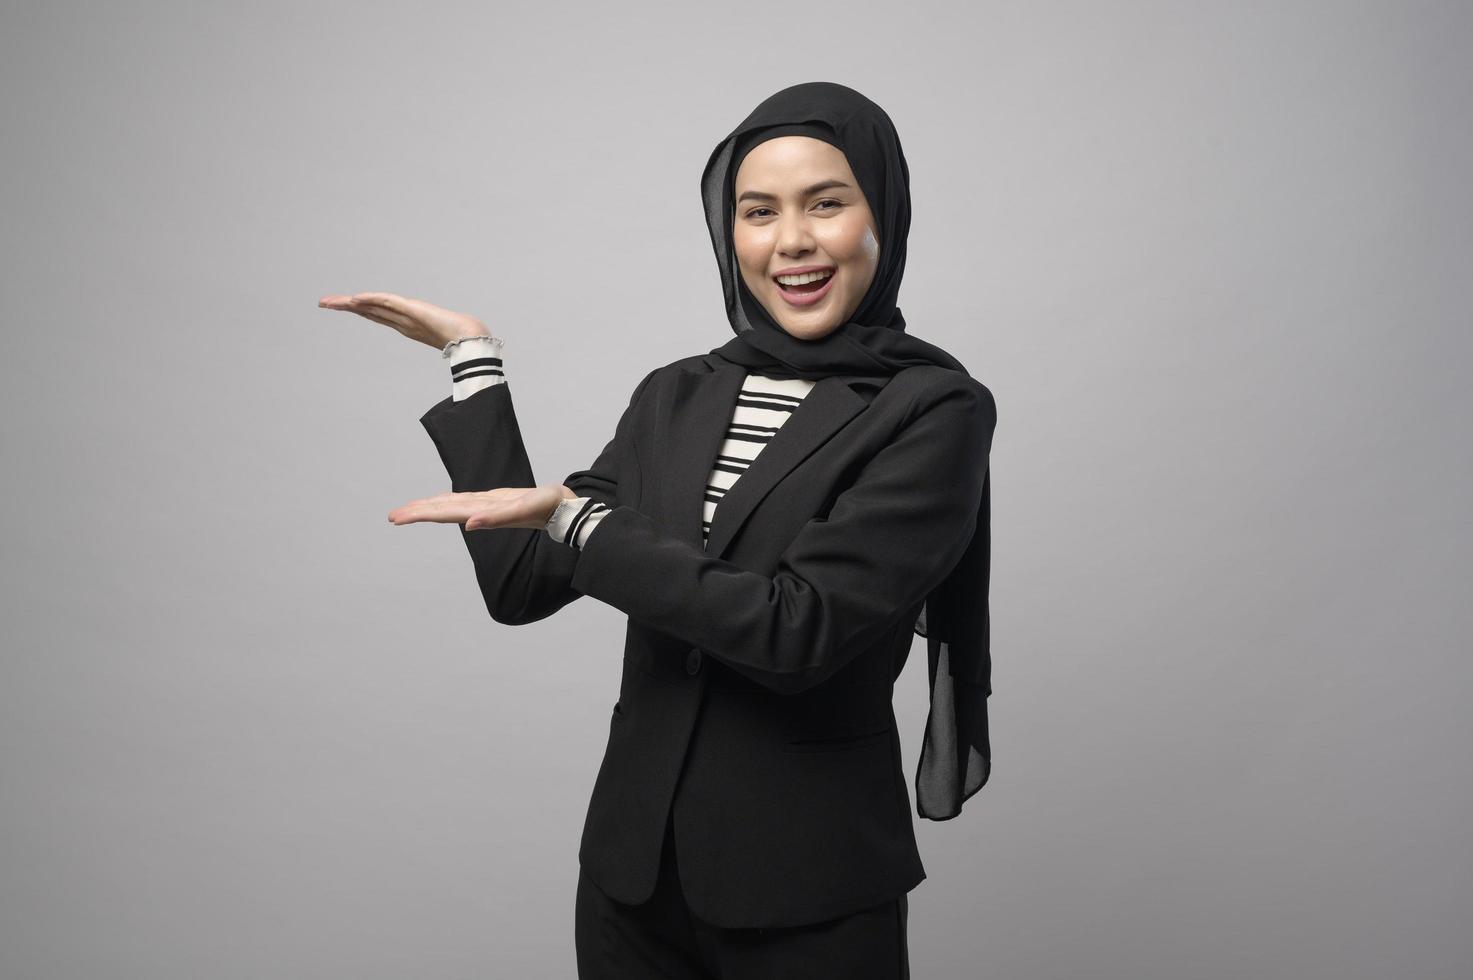 Belle femme d'affaires avec portrait hijab sur fond blanc photo